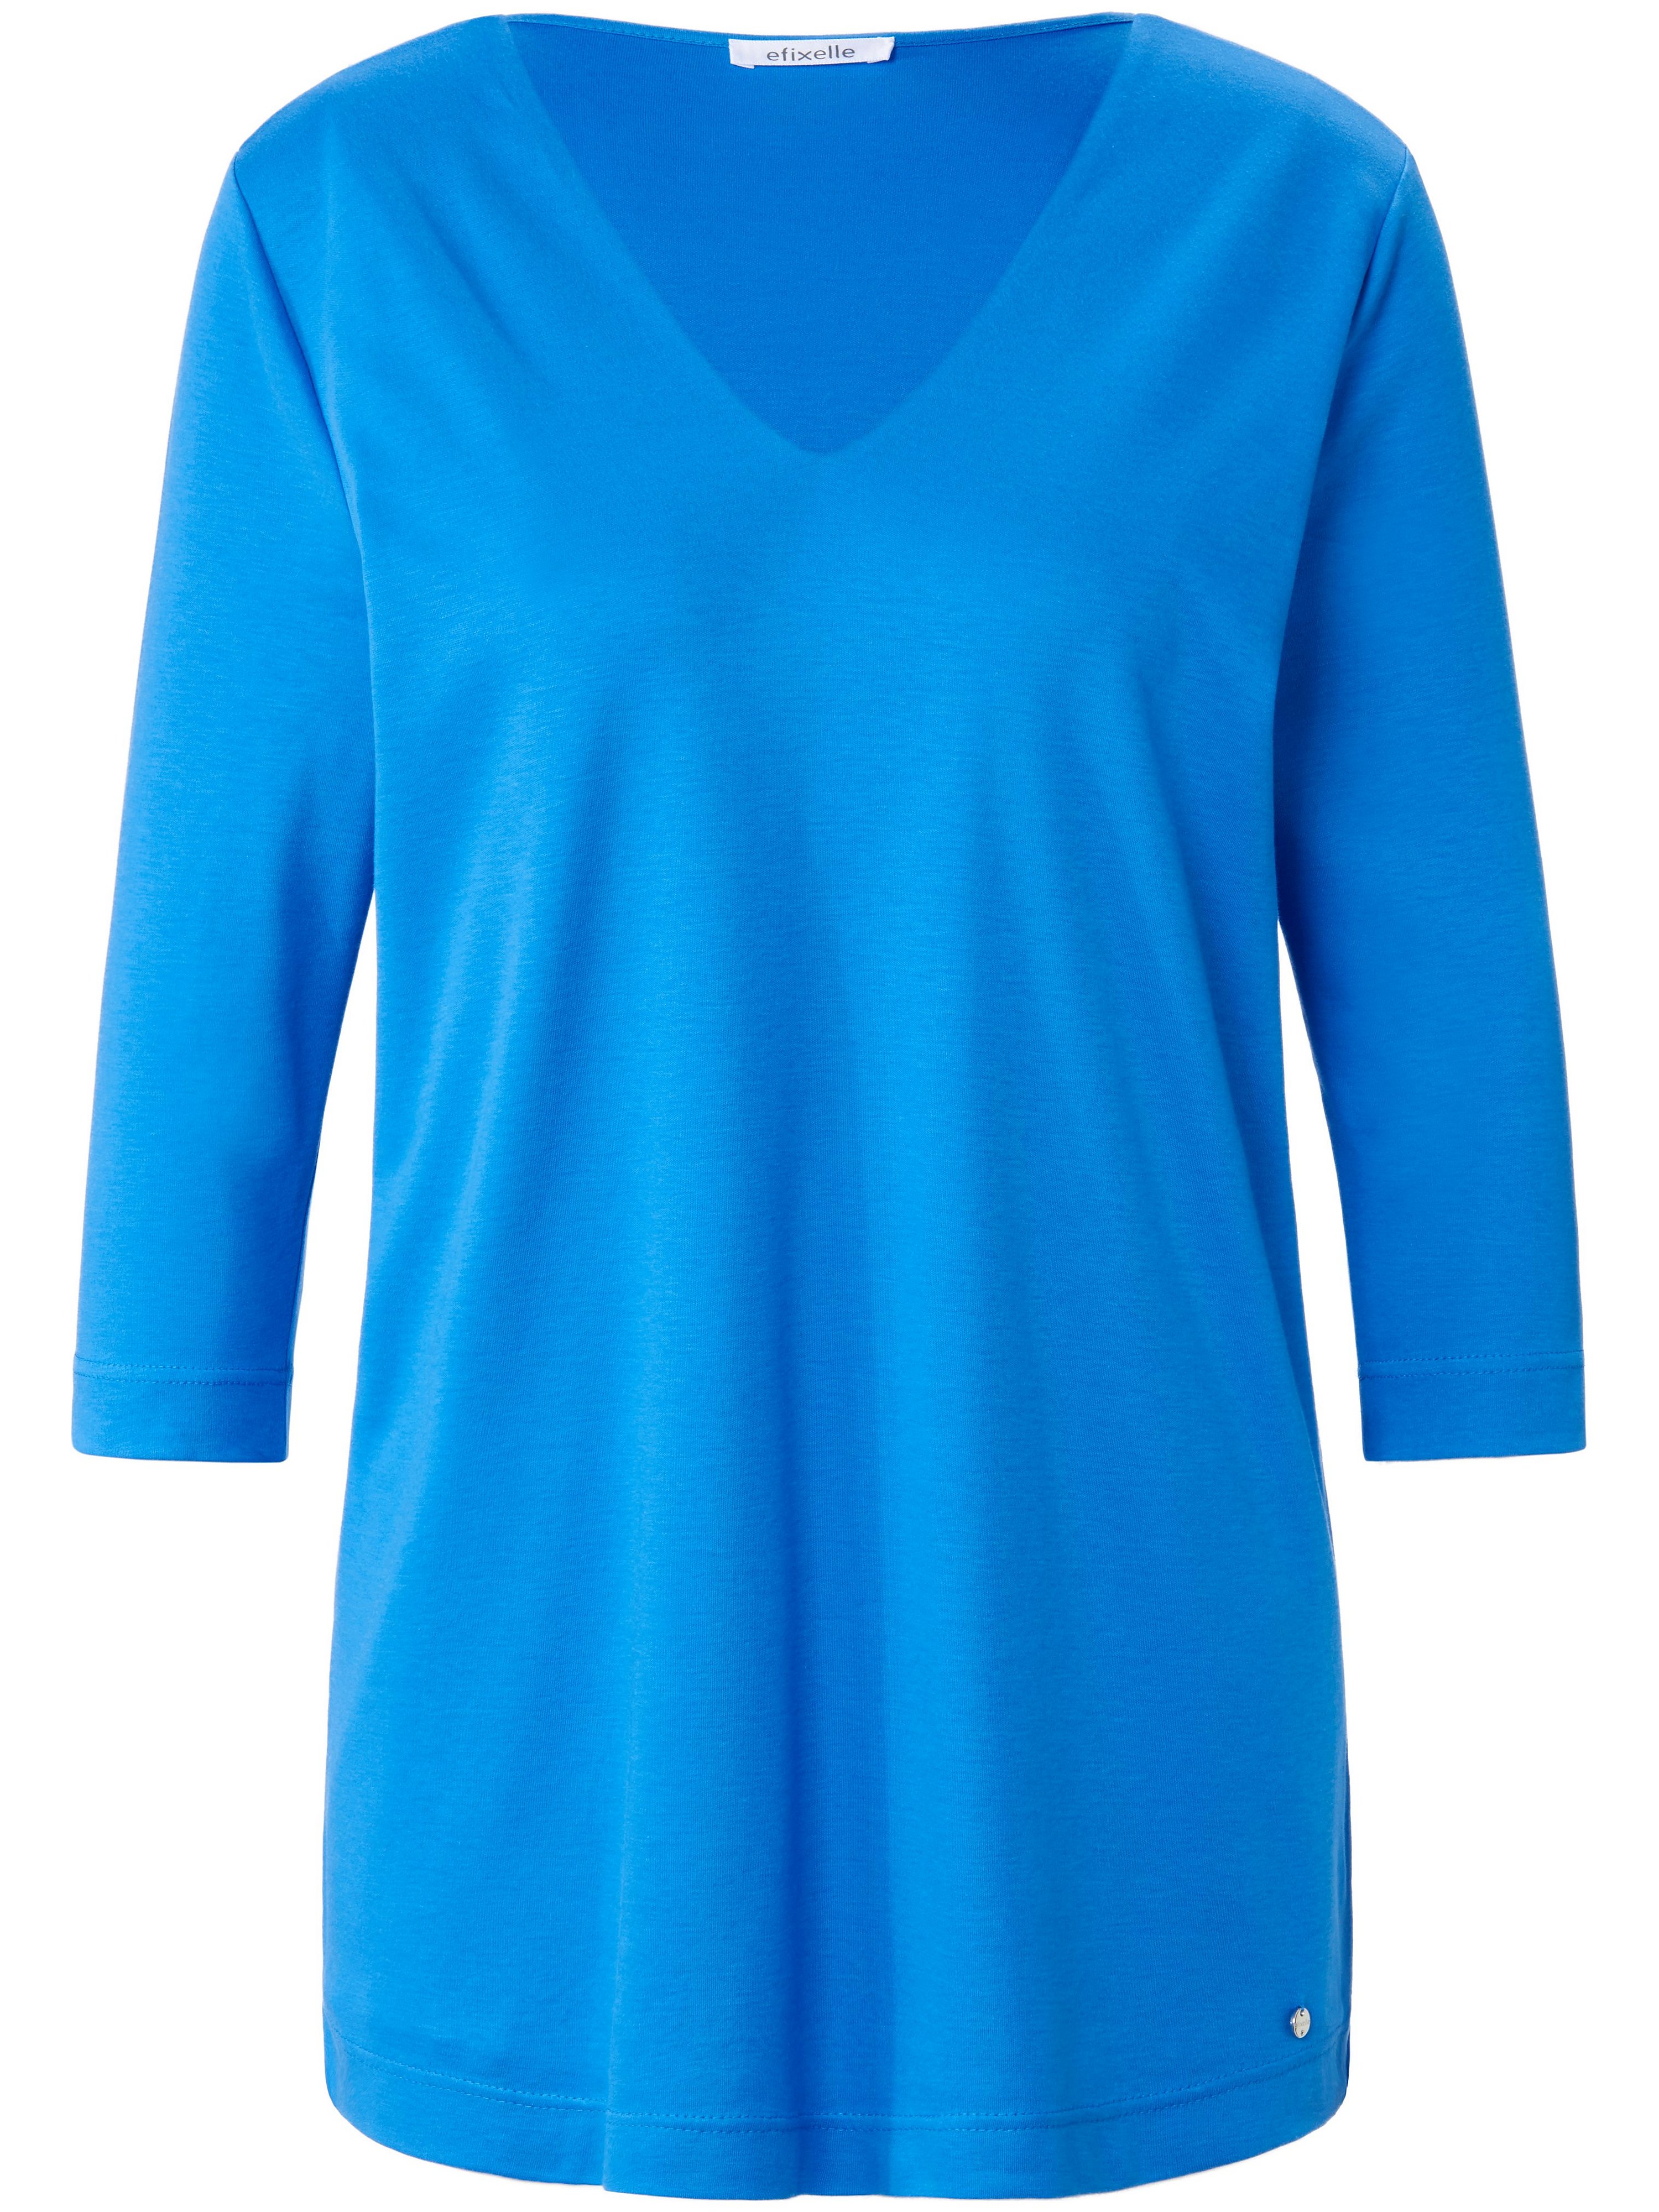 Le T-shirt 100% coton  Efixelle bleu taille 44